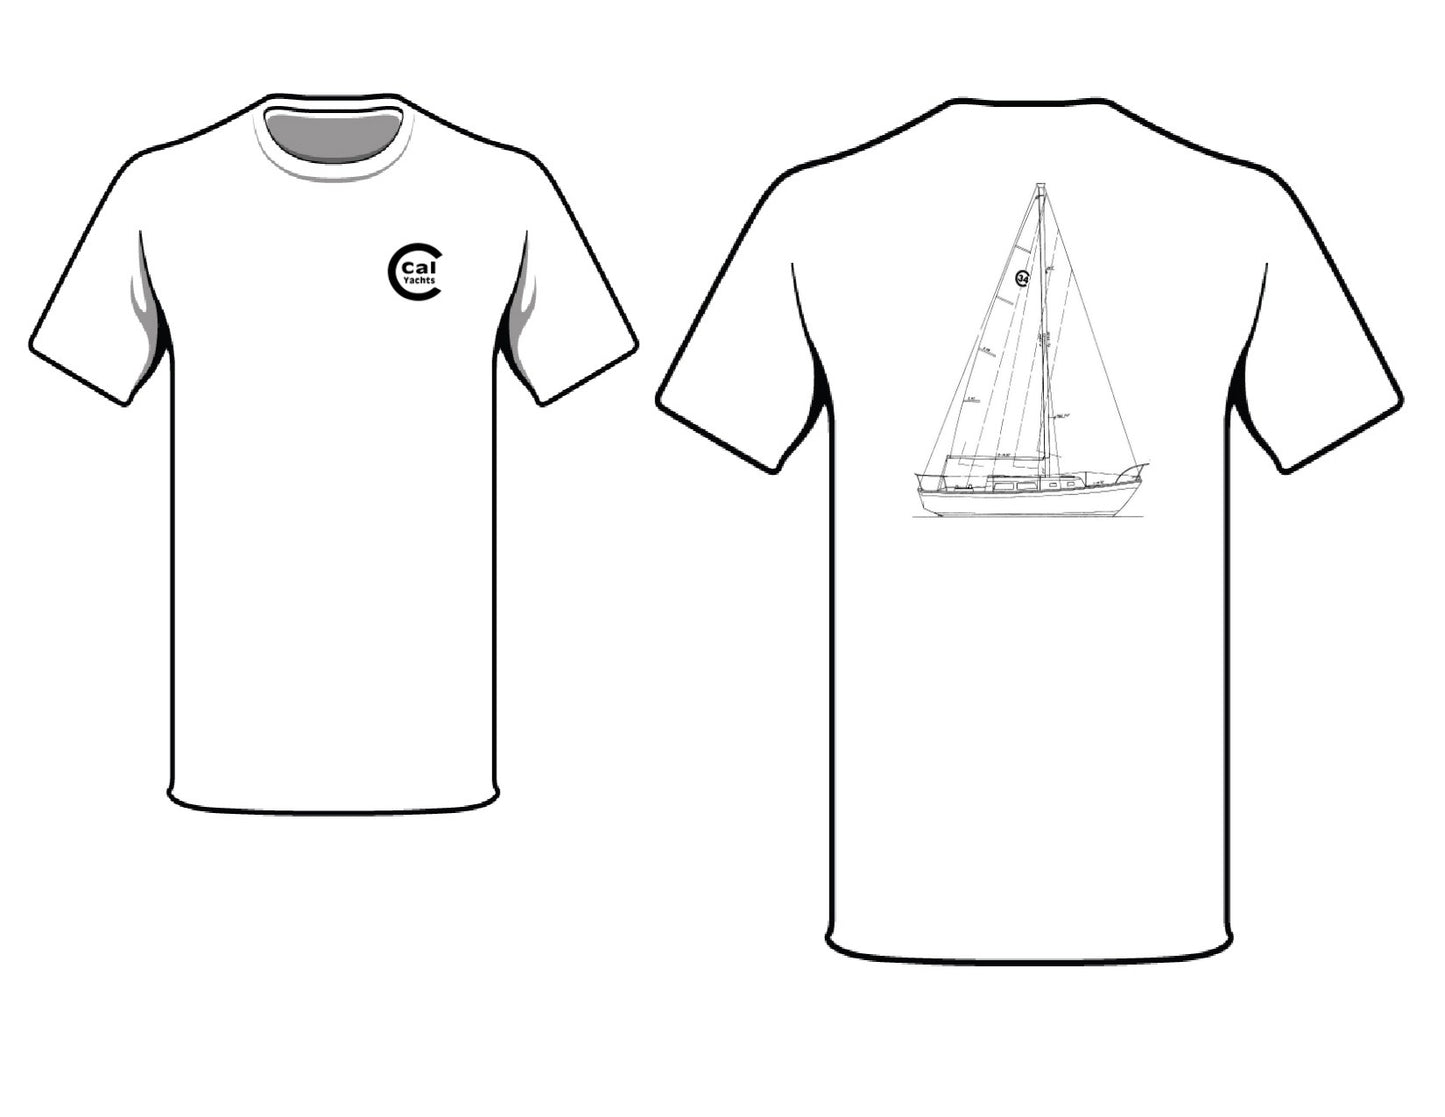 Cal 34 T-Shirt